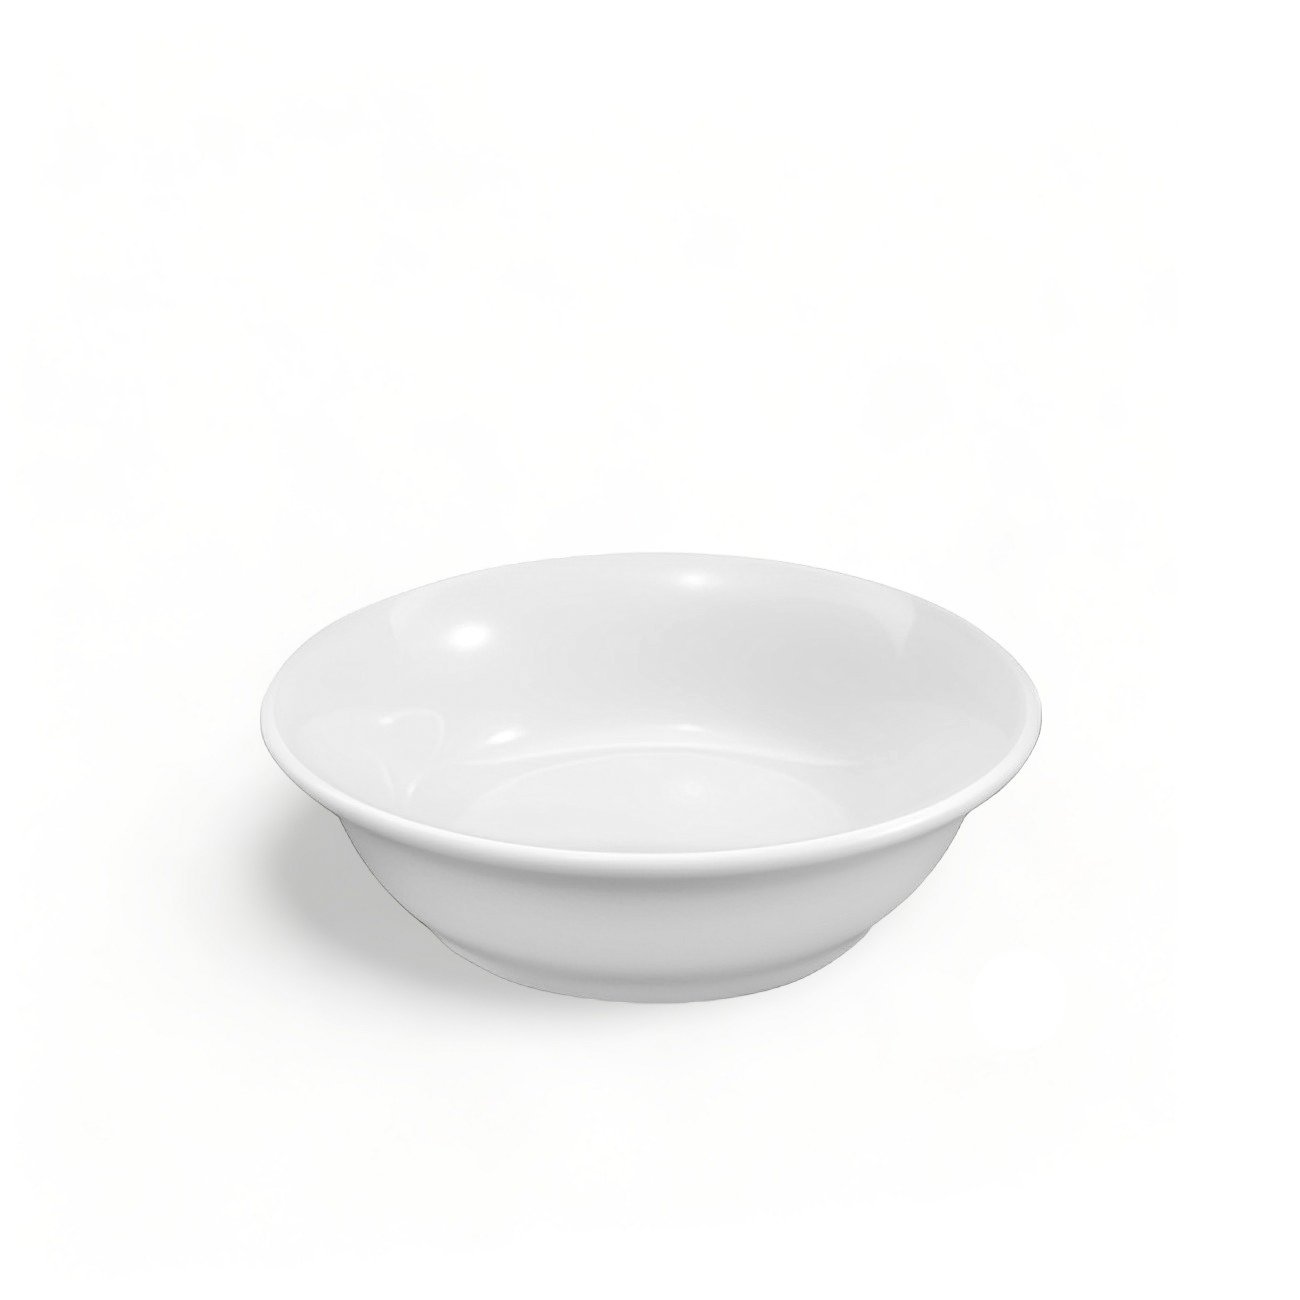 4 Tigela de Porcelana Premium Cumbuca Pote Bowl 350ml